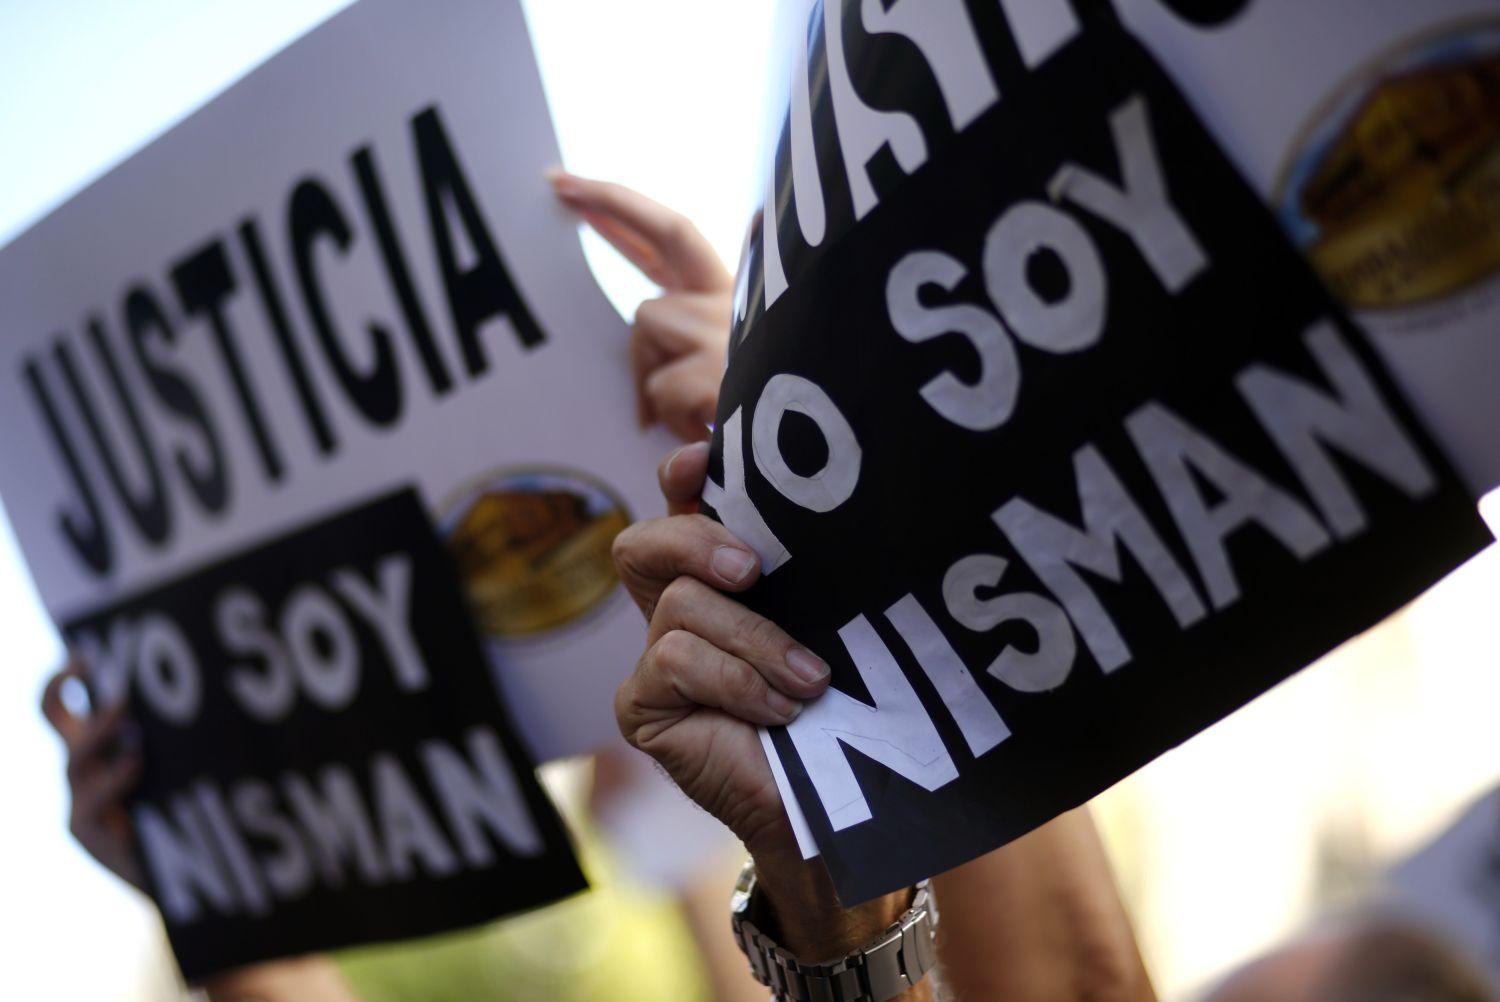 Az igazságért Buenos Airesben már több tüntetést is szerveztek